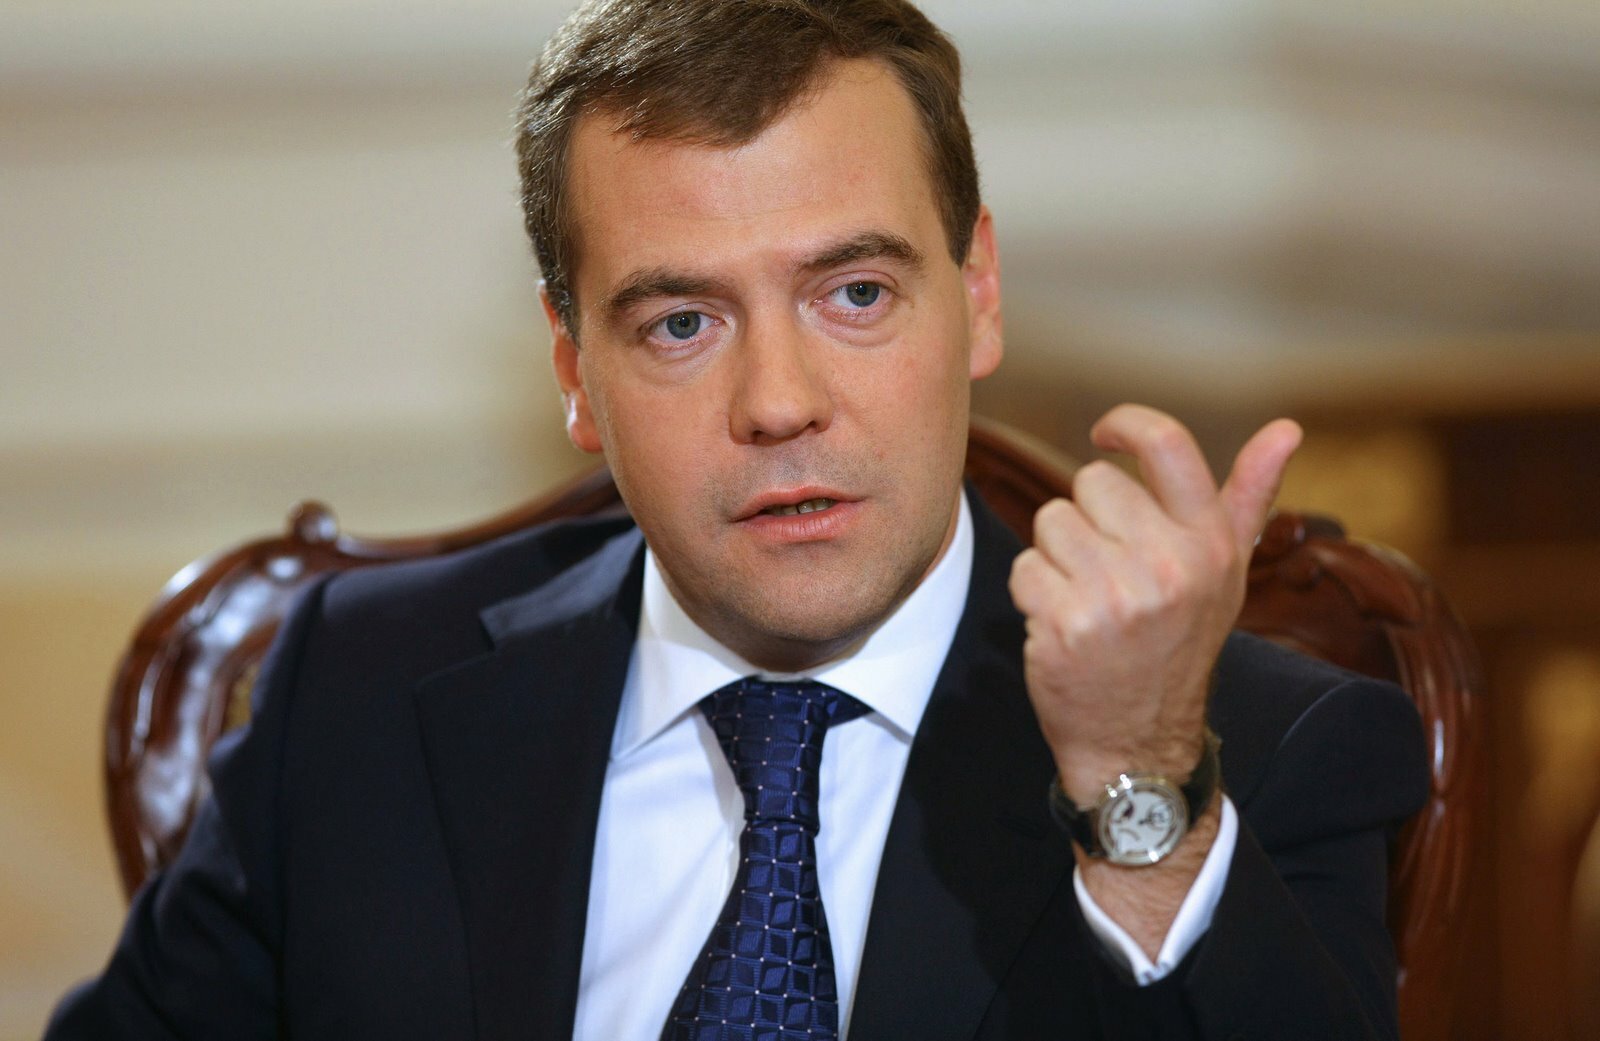 "А другие к этому готовы?" Медведев считает, что "Единая Россия" сильная партия, т.к. согласилась на двойное голосование